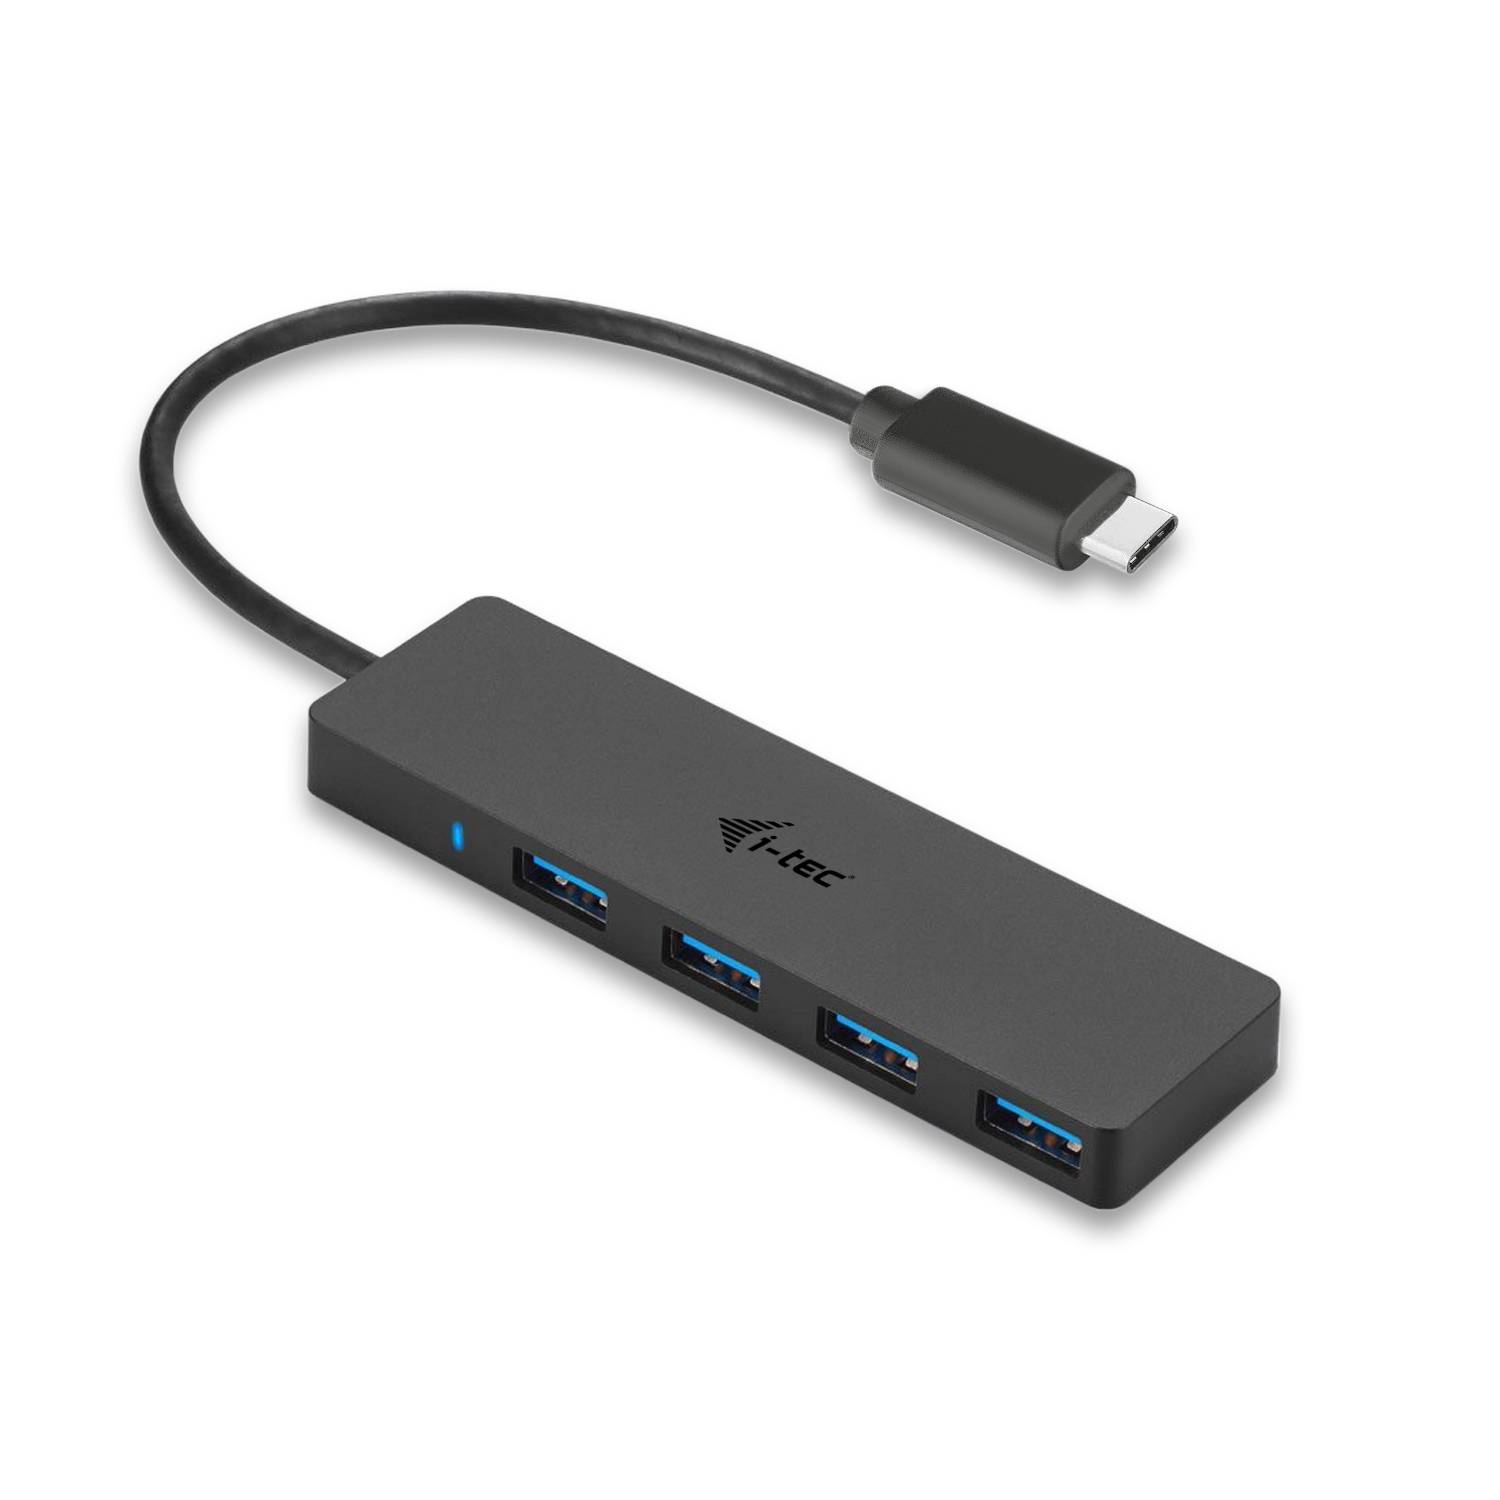 Rca Informatique - Image du produit : I-TEC USB-C SLIM PASSIVE HUB 4P NO PS WIN AND MAC OS BLACK